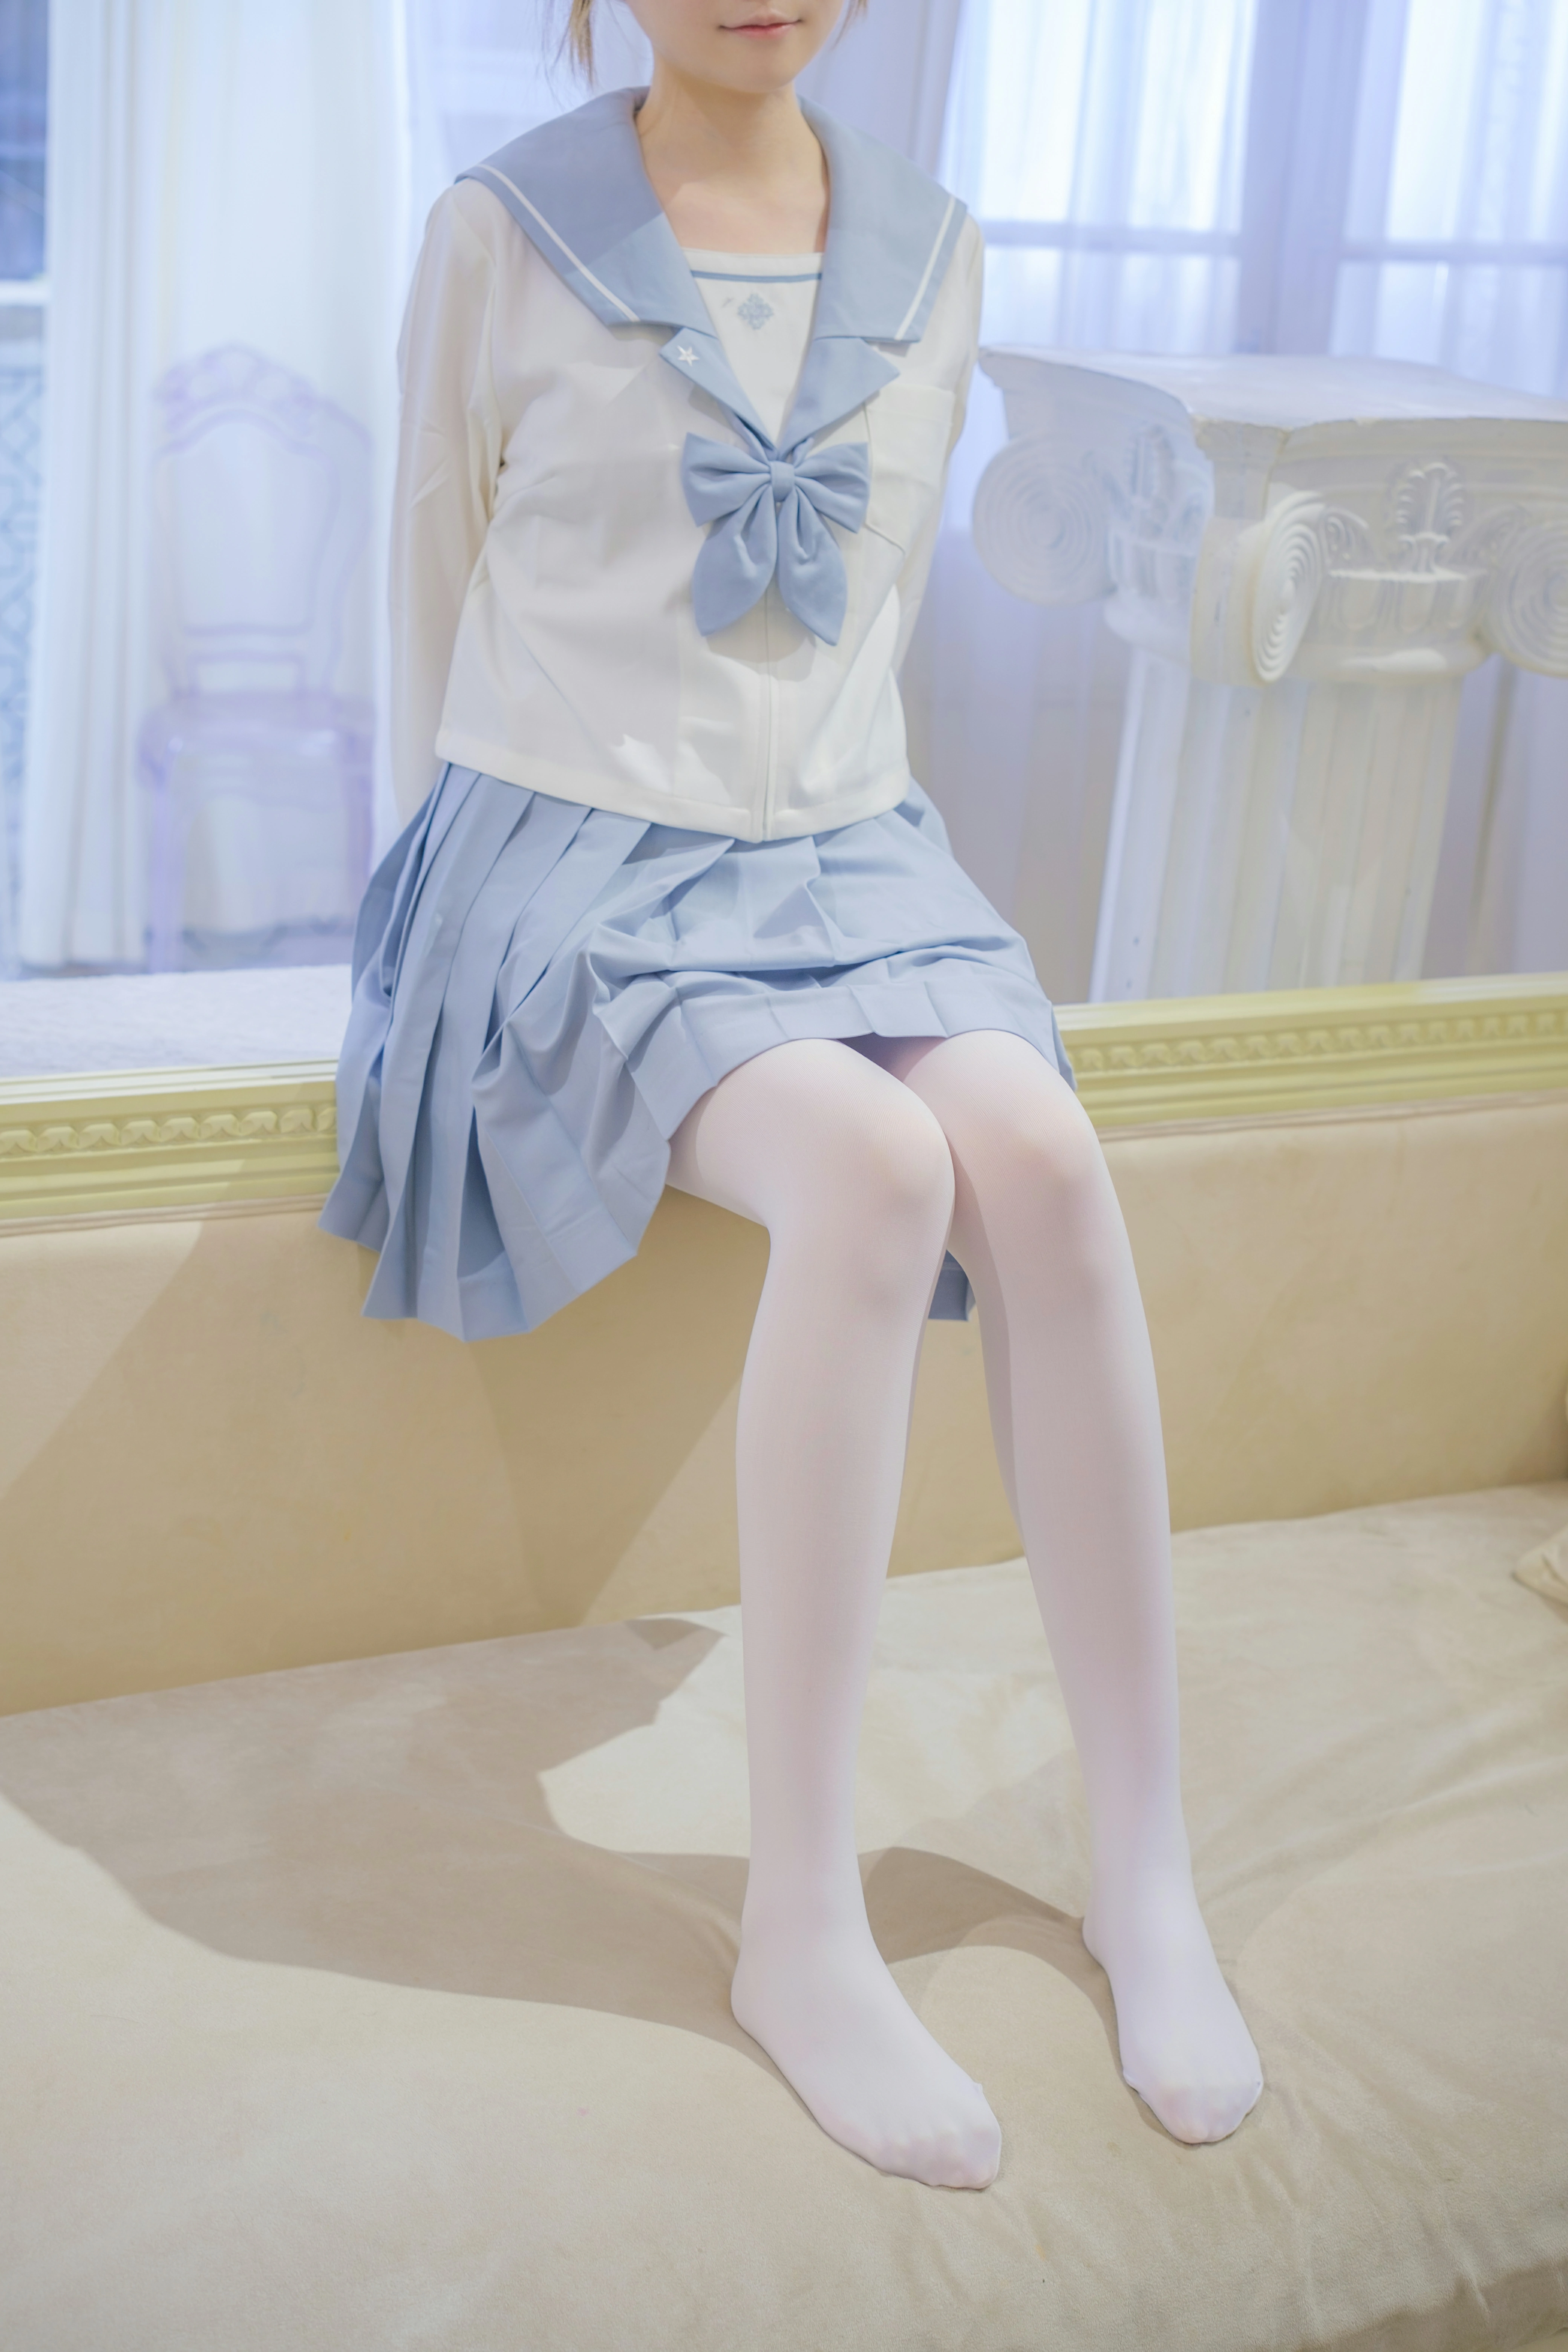 [森萝财团]内部VIP系列 微风-04 少女萝莉小学妹 白色JK制服与蓝色短裙加白色丝袜美腿私房写真集,0005